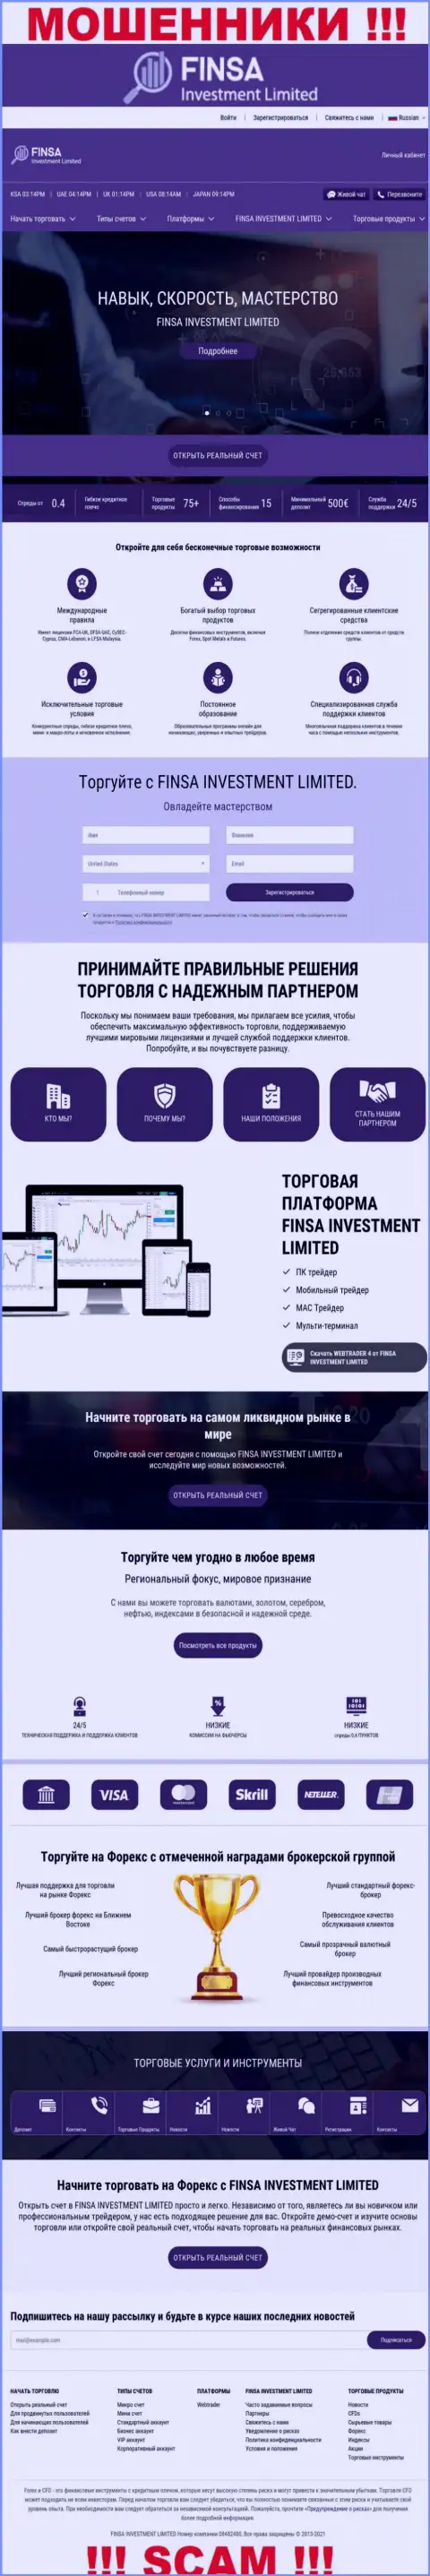 Сайт конторы Finsa Investment Limited, забитый липовой инфой